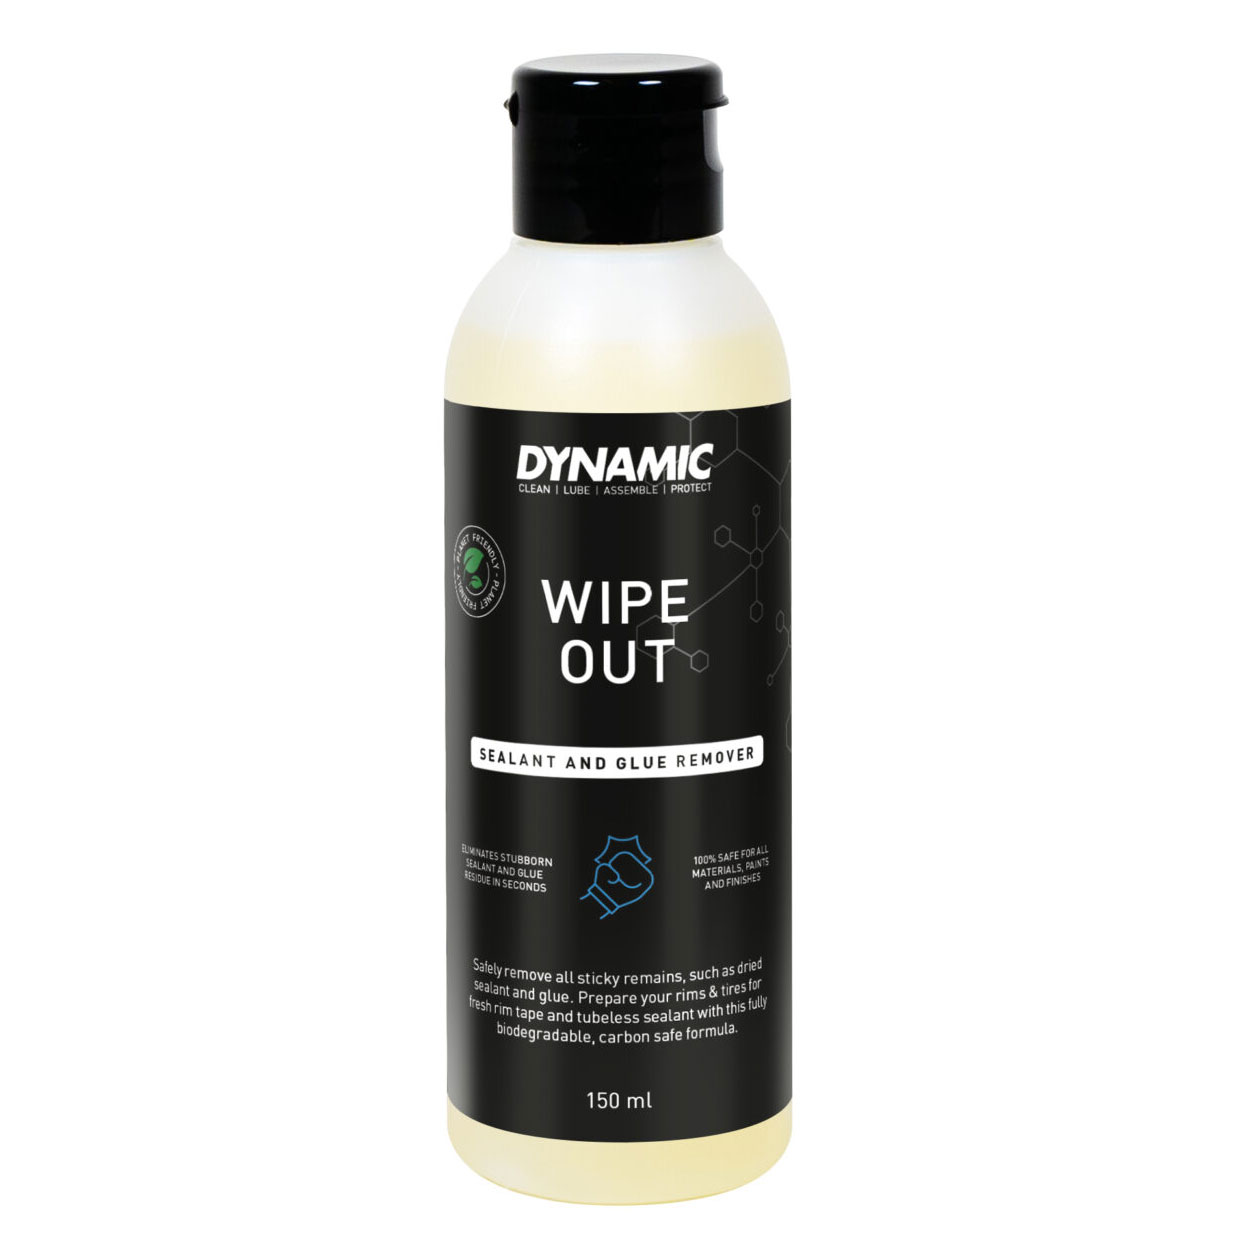 Produktbild von Dynamic Wipe Out Dichtmilch- und Klebstoffentferner - 150ml